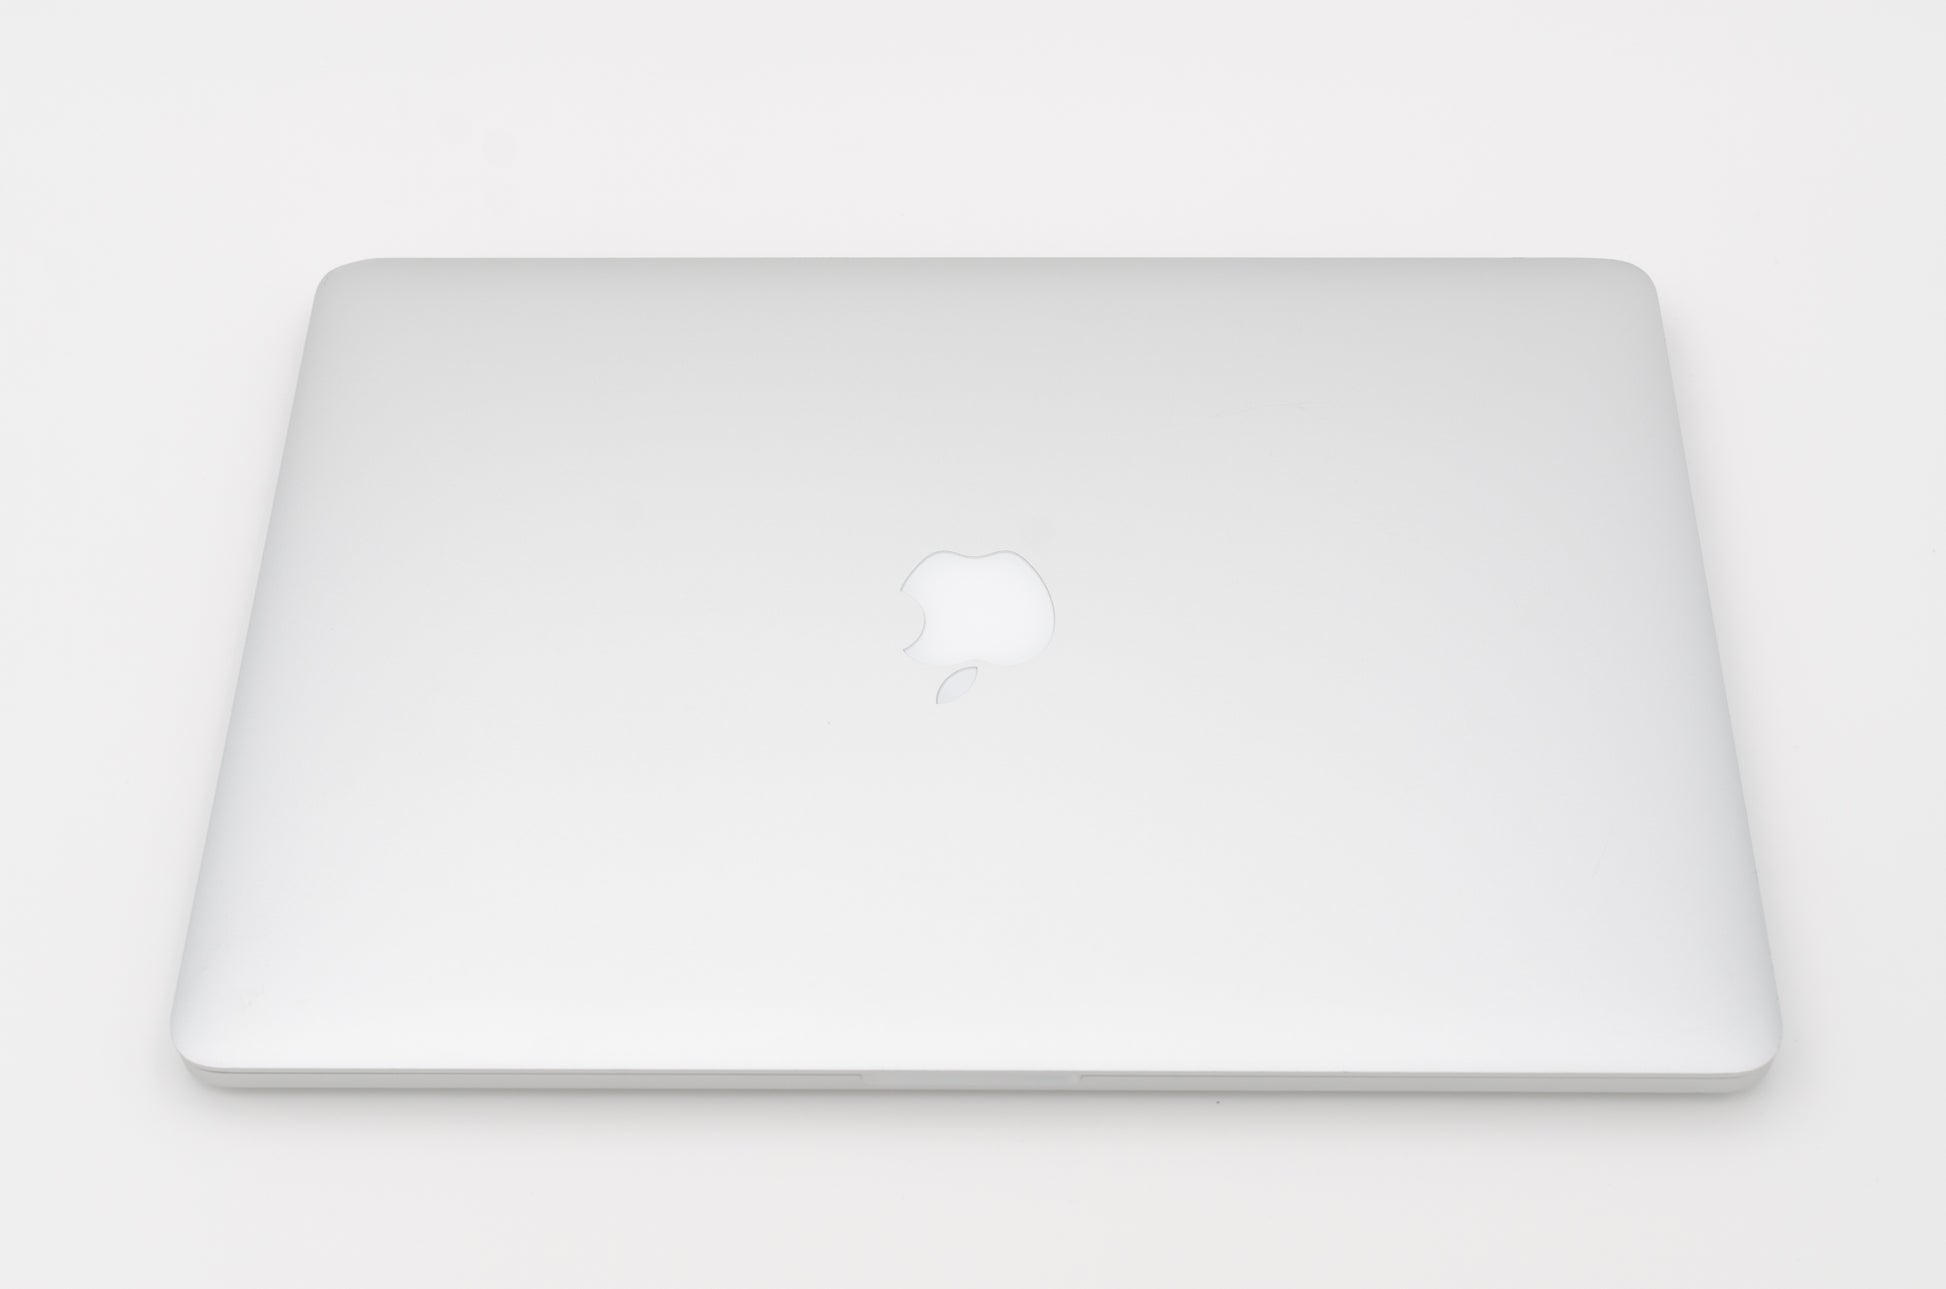 apple-mid-2012-15.4-inch-macbook-pro-retina-a1398-aluminum-qci7 - 2.6ghz processor, 8gb ram, gt 650m - 1gb gpu-mc976ll/a-5